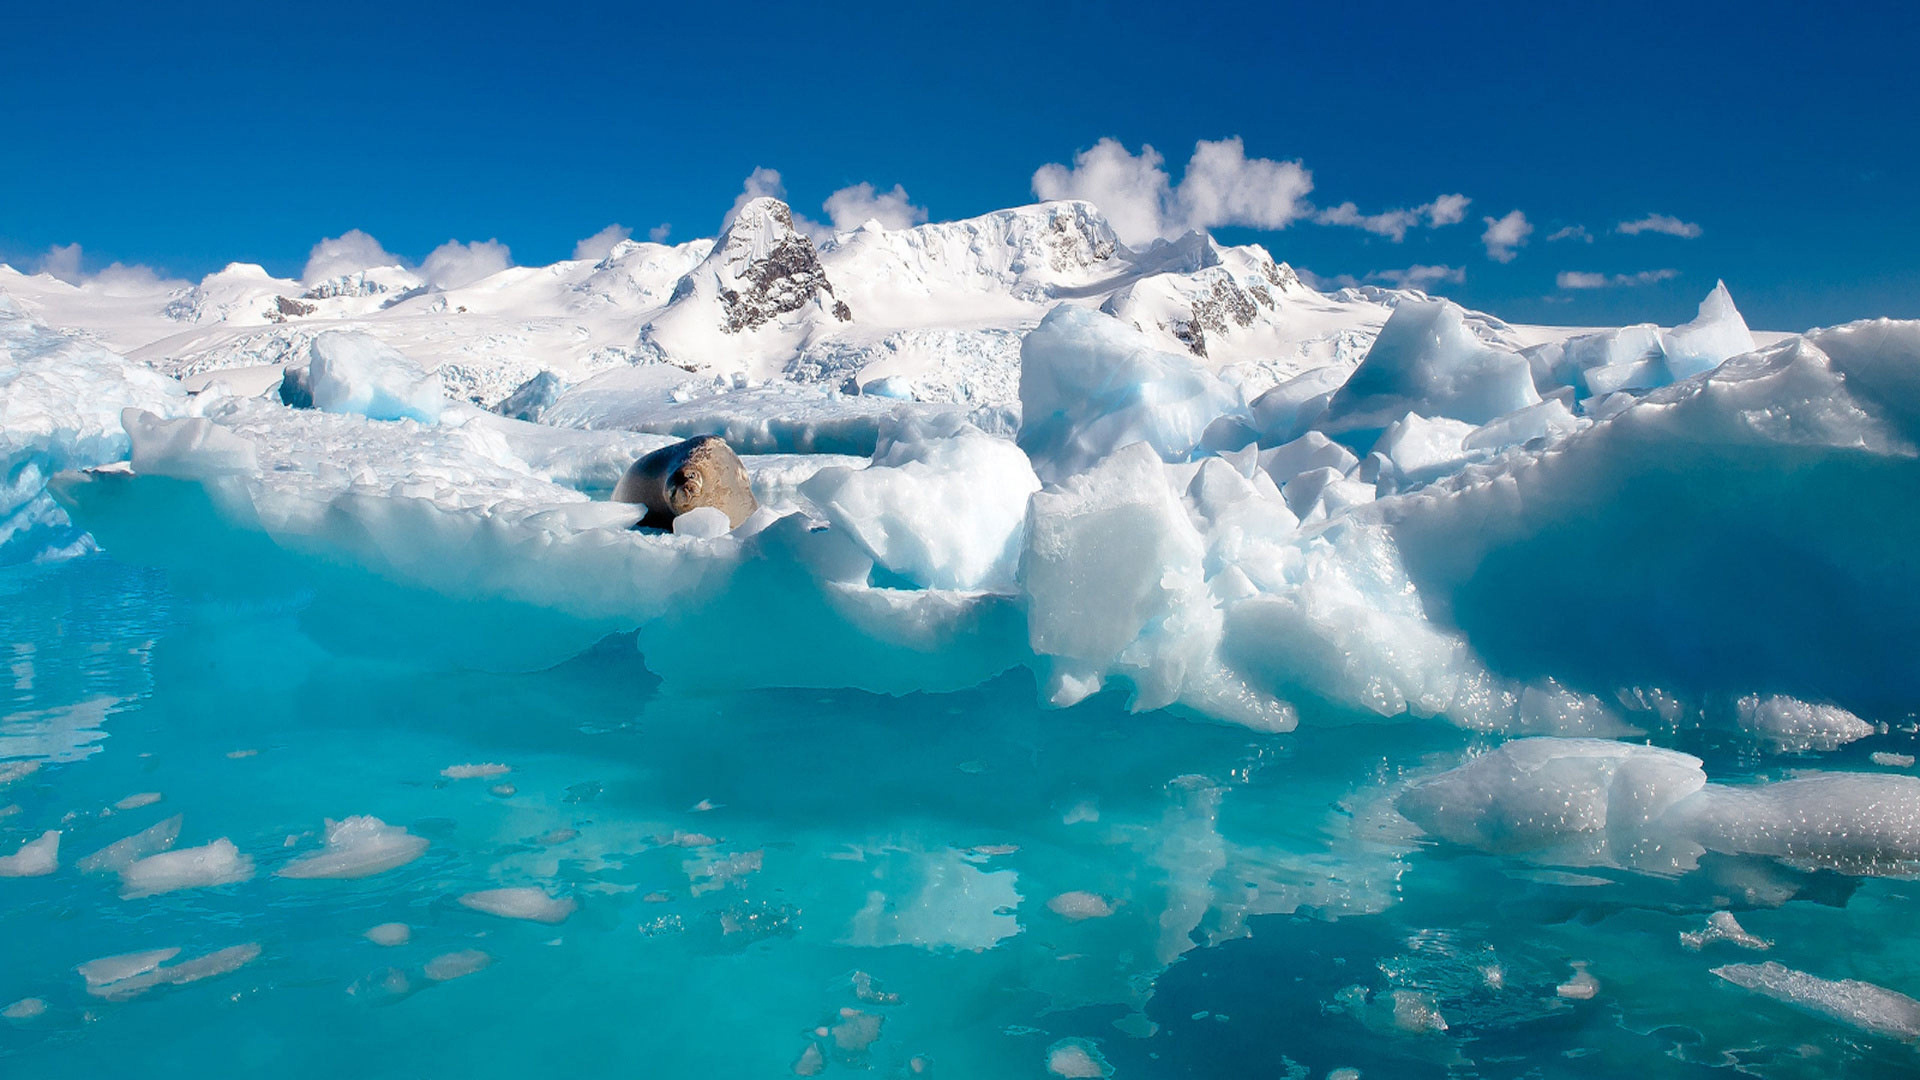 极地冰盖, 冰山, 冰川湖, 北冰洋, 冰帽 壁纸 1920x1080 允许